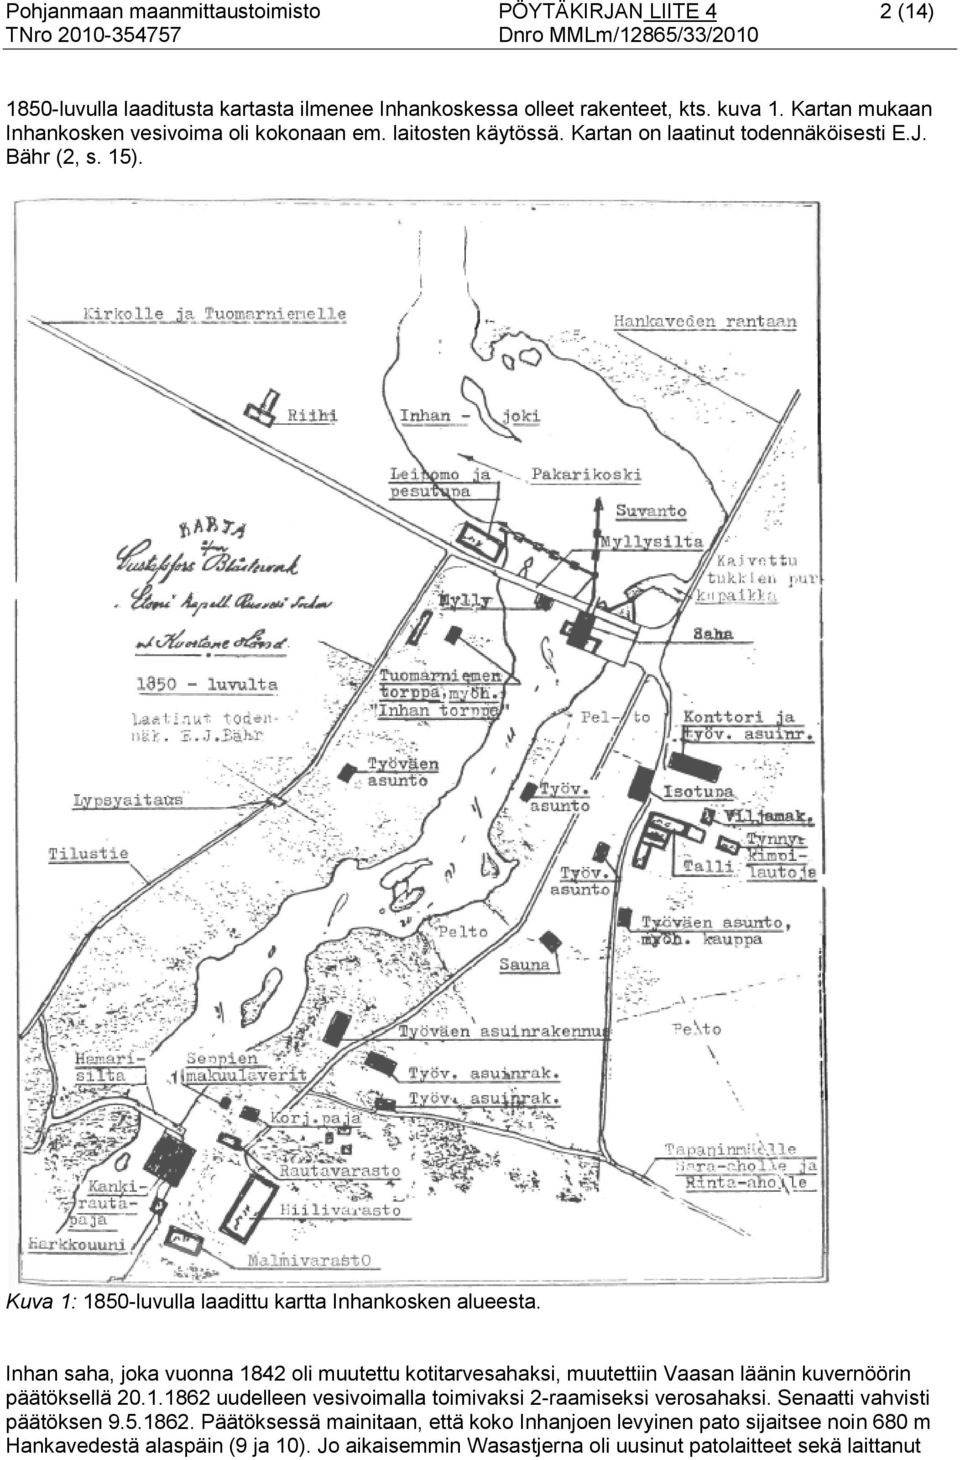 Kuva 1: 1850-luvulla laadittu kartta Inhankosken alueesta. Inhan saha, joka vuonna 1842 oli muutettu kotitarvesahaksi, muutettiin Vaasan läänin kuvernöörin päätöksellä 20.1.1862 uudelleen vesivoimalla toimivaksi 2-raamiseksi verosahaksi.